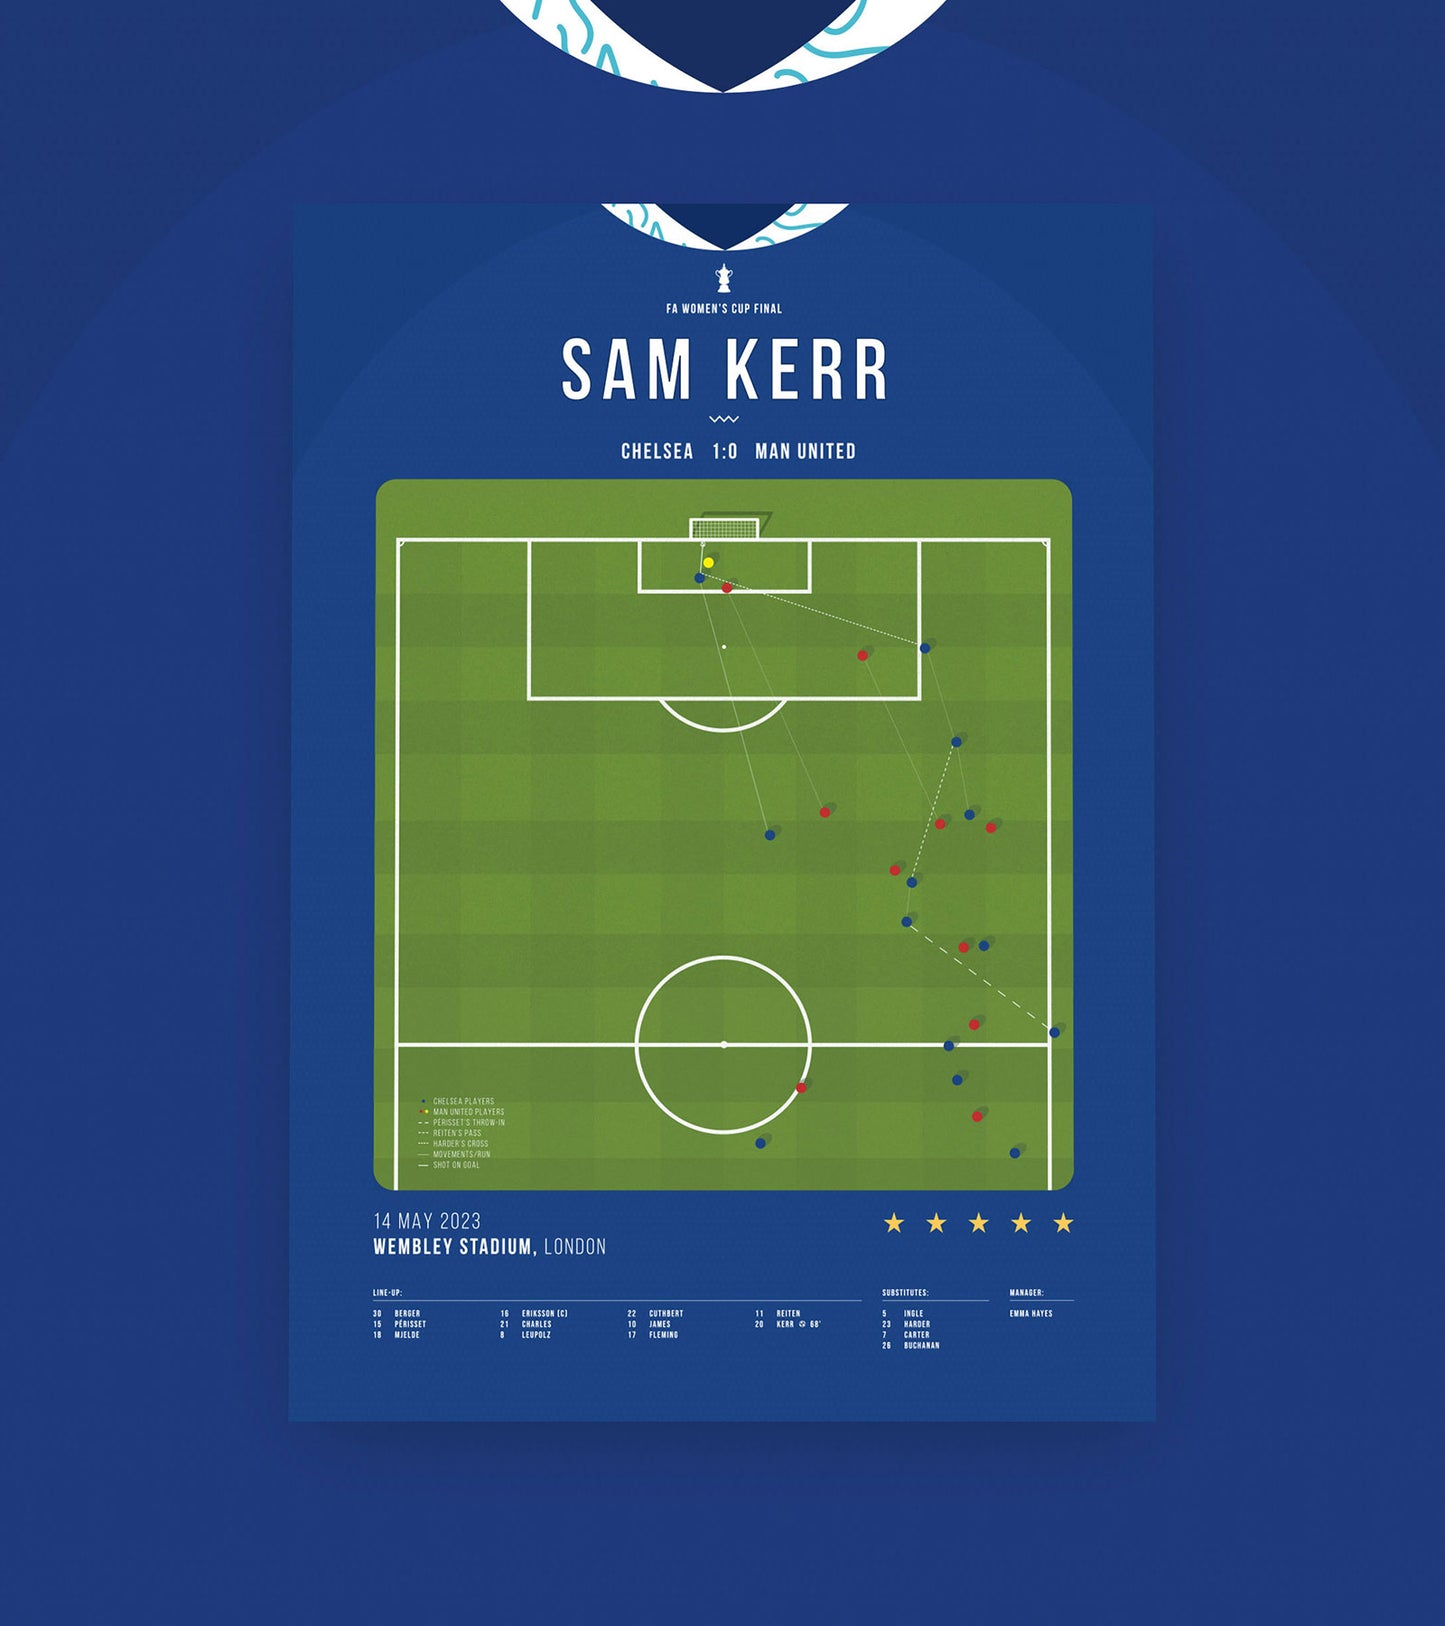 Sam Kerr scores match-winner as Chelsea wins Women's FA Cup